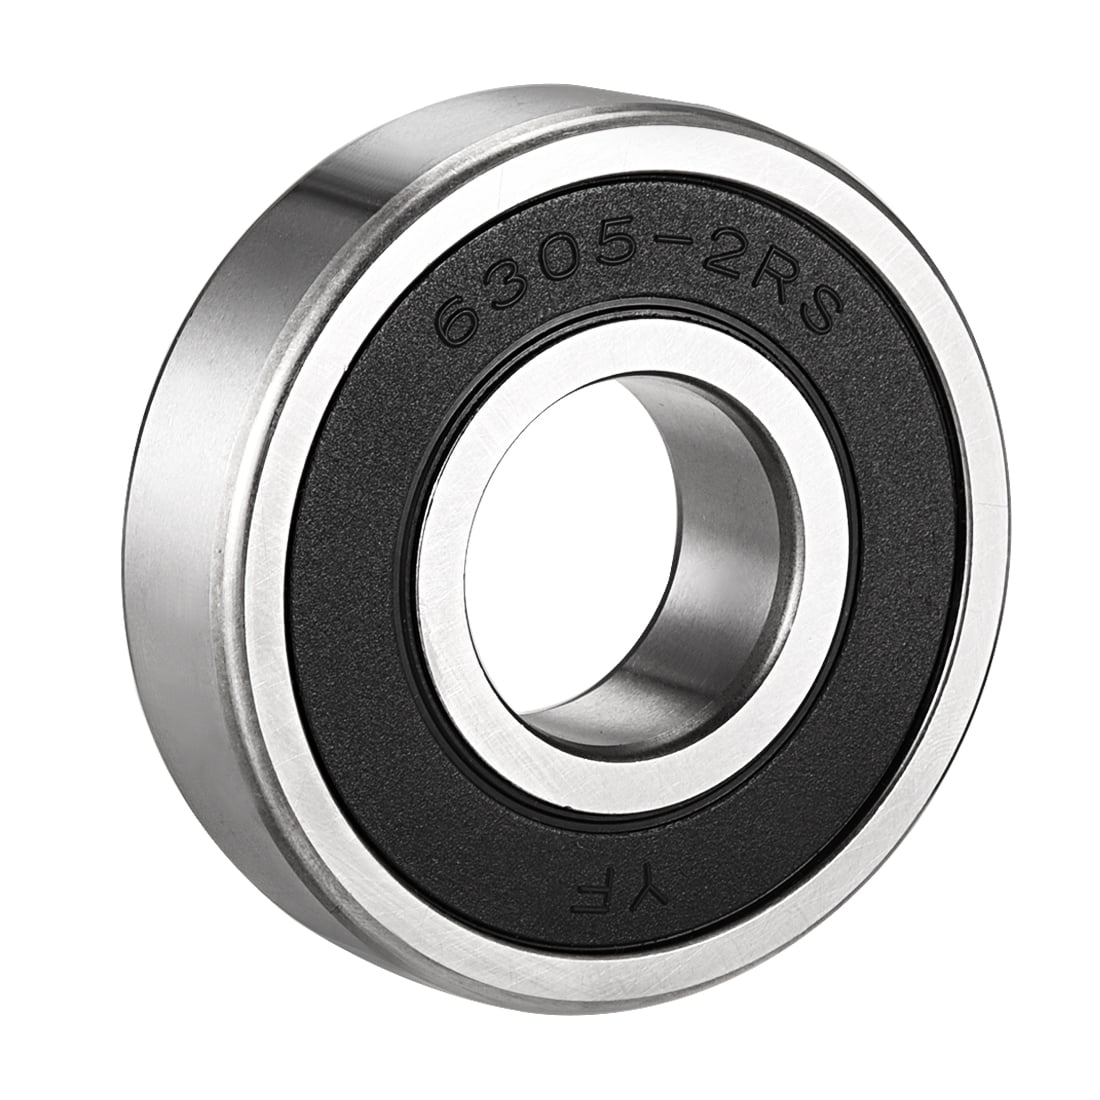 6305 2RS quality ball bearing 25mm x 62mm x 17mm